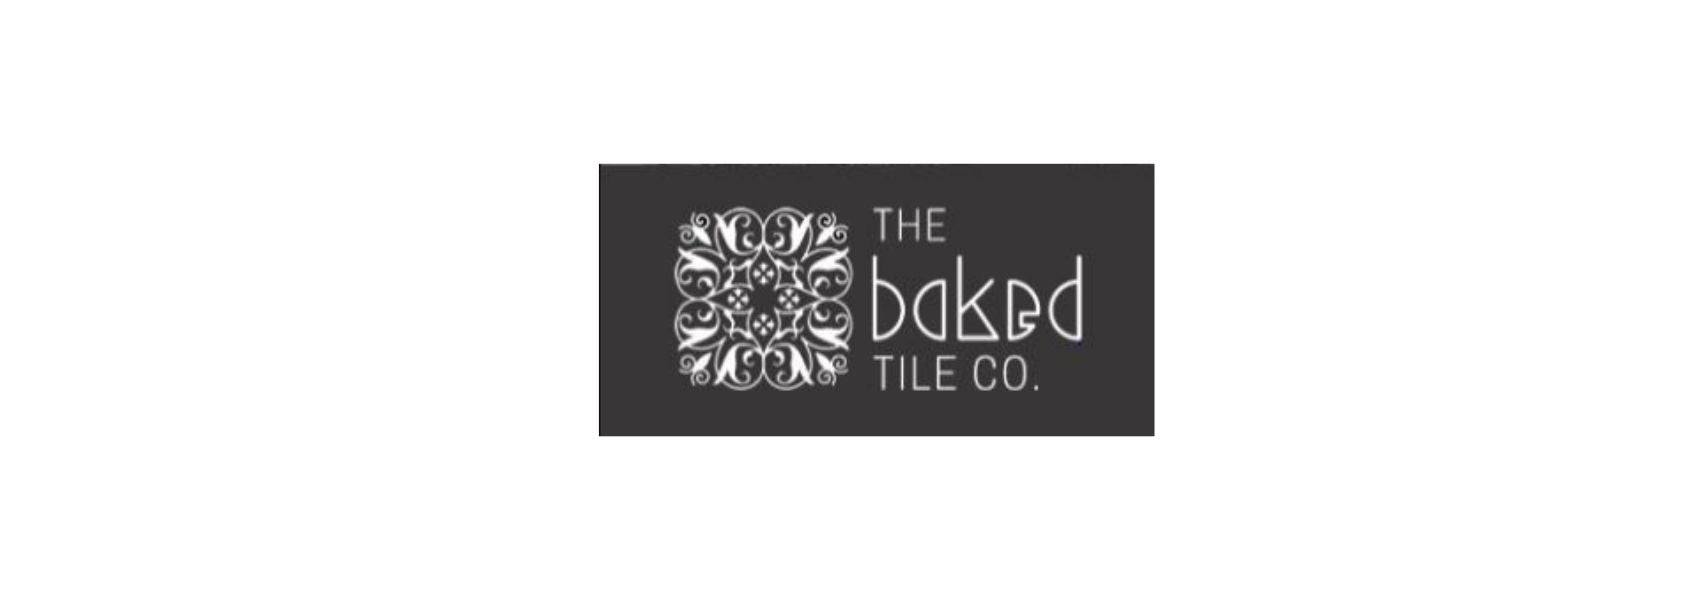 The Baked Tile Co logo